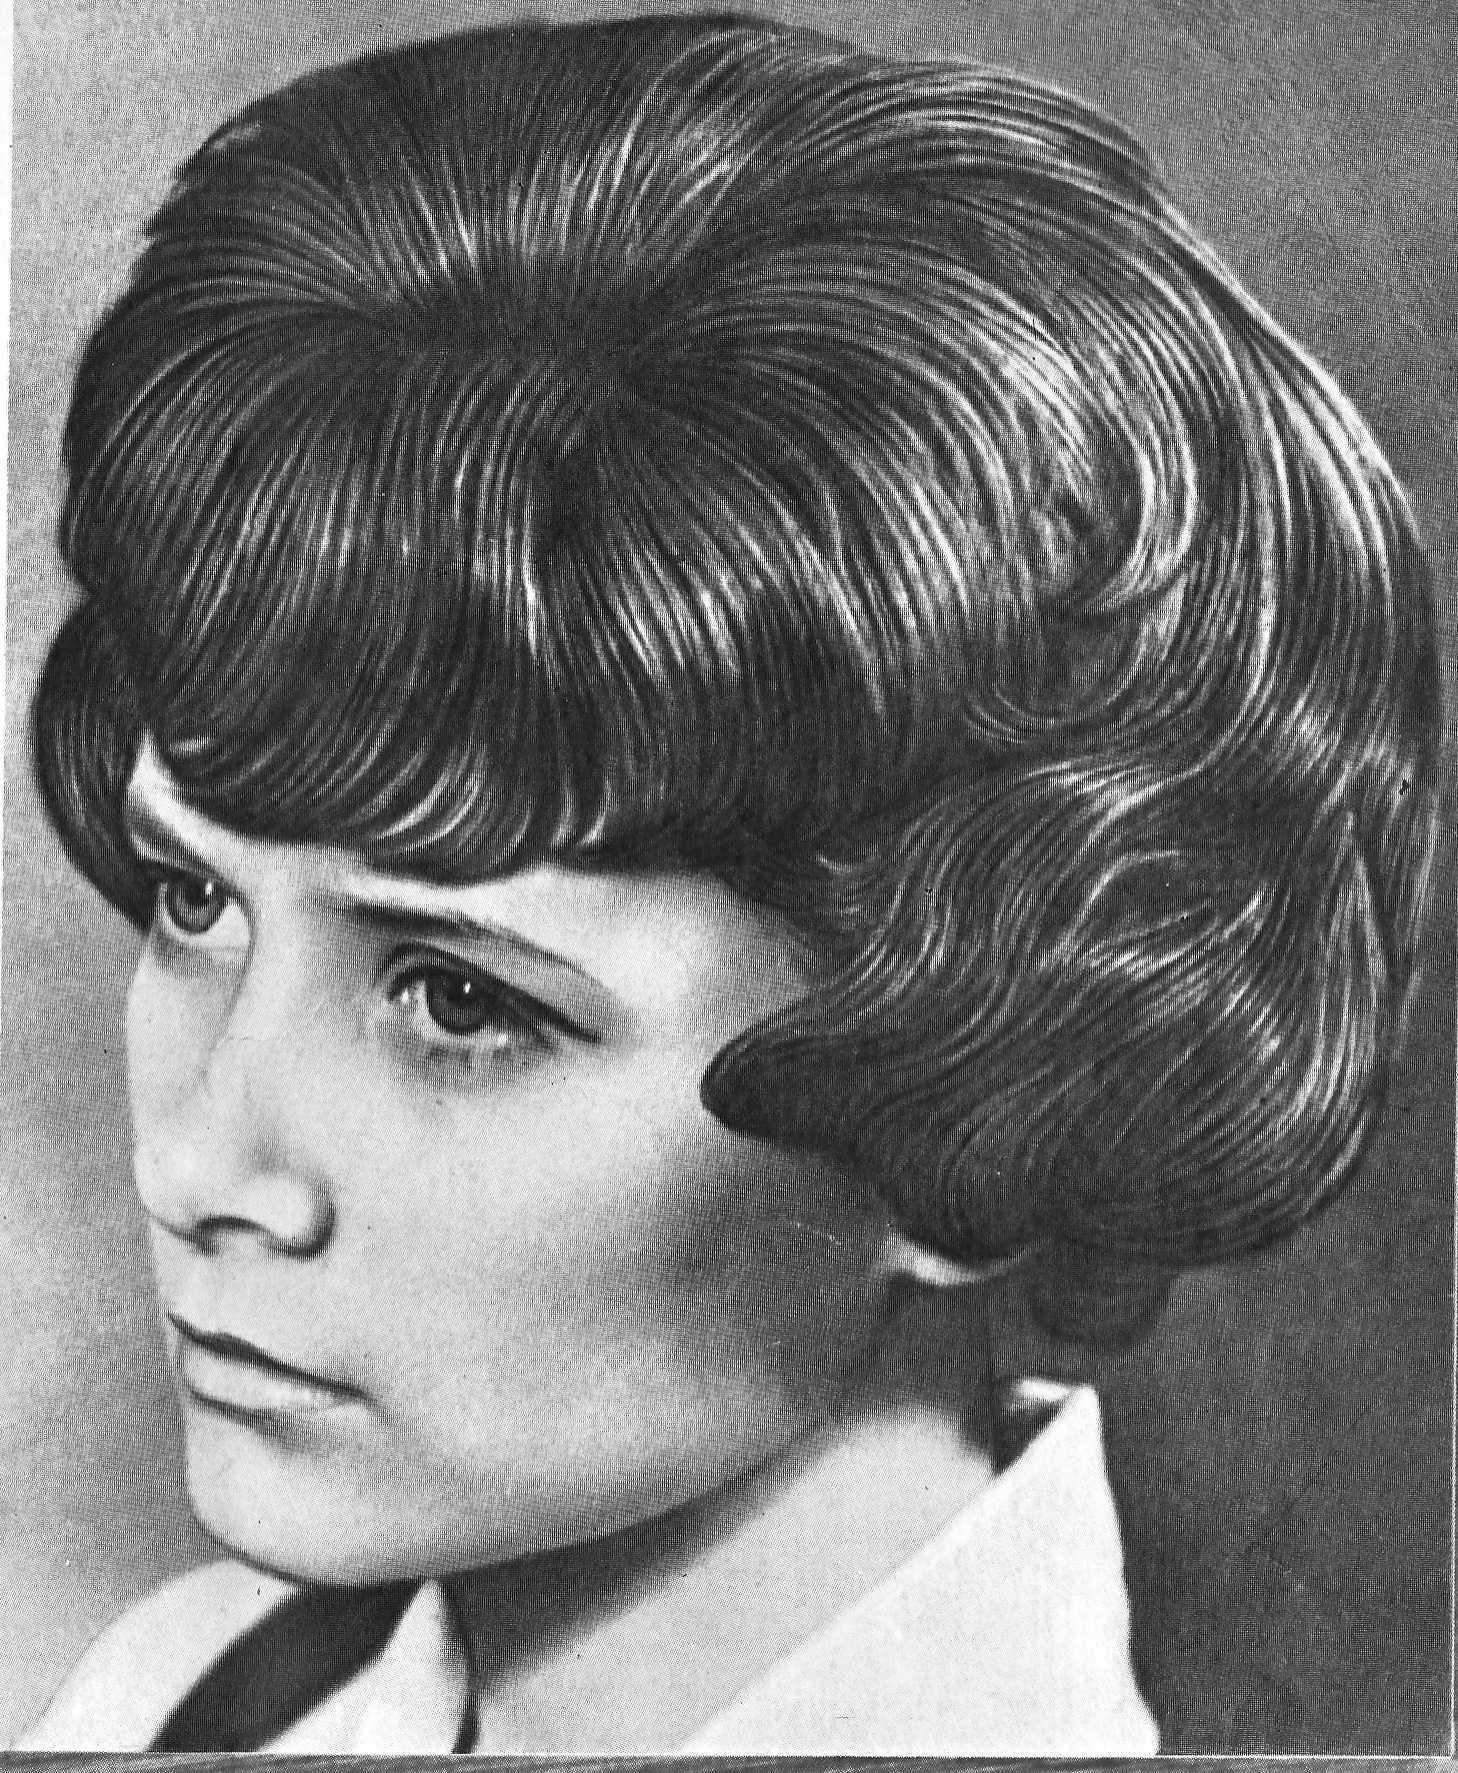 Прически 70-х годов: фото женских модных стрижек, одежды в стиле 1970, тенденции моды, что носили и как красились женщины, описание того времени, самые популярные укладки на длинные, средние и коротки